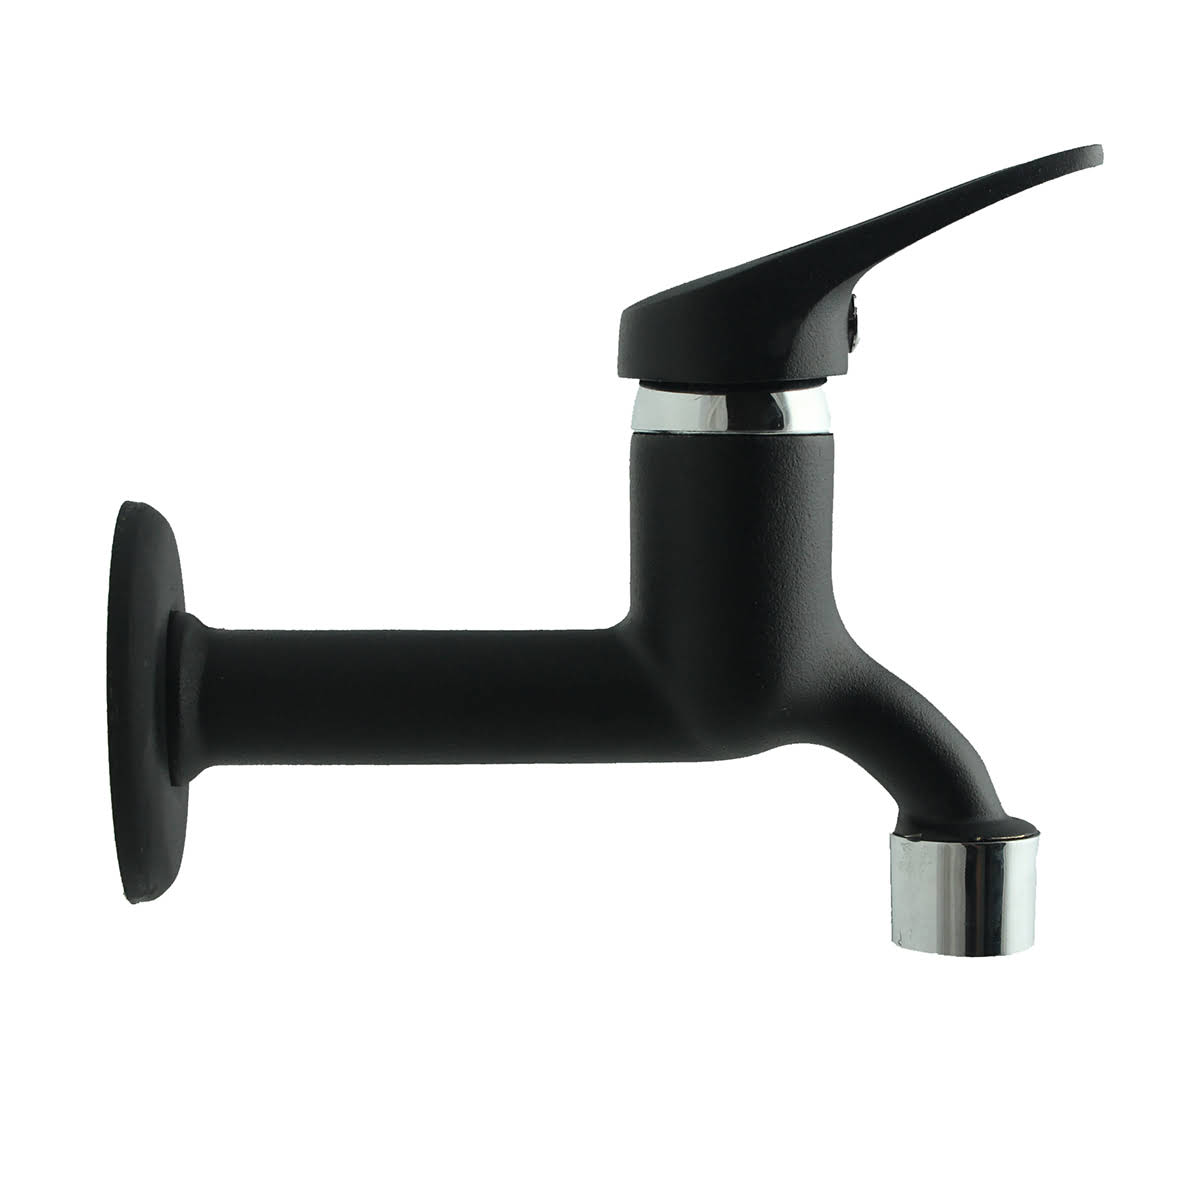 FKN Mini Mix Siyah Uzun Musluk Kolaylıkla su akışı kontrol edilebilir siyah uzun musluk. Modern ve minimalist bir görüntüye sahiptir. Perlatörlü su akış ucu sayesinde %60 a kadar su tasarrufu sağlamaktadır.  Tuvalet  banyo  çeşme el yıkama yerlerinde kullanılabilir.  Ürün Özellikleri  Ürün Rengi: Si